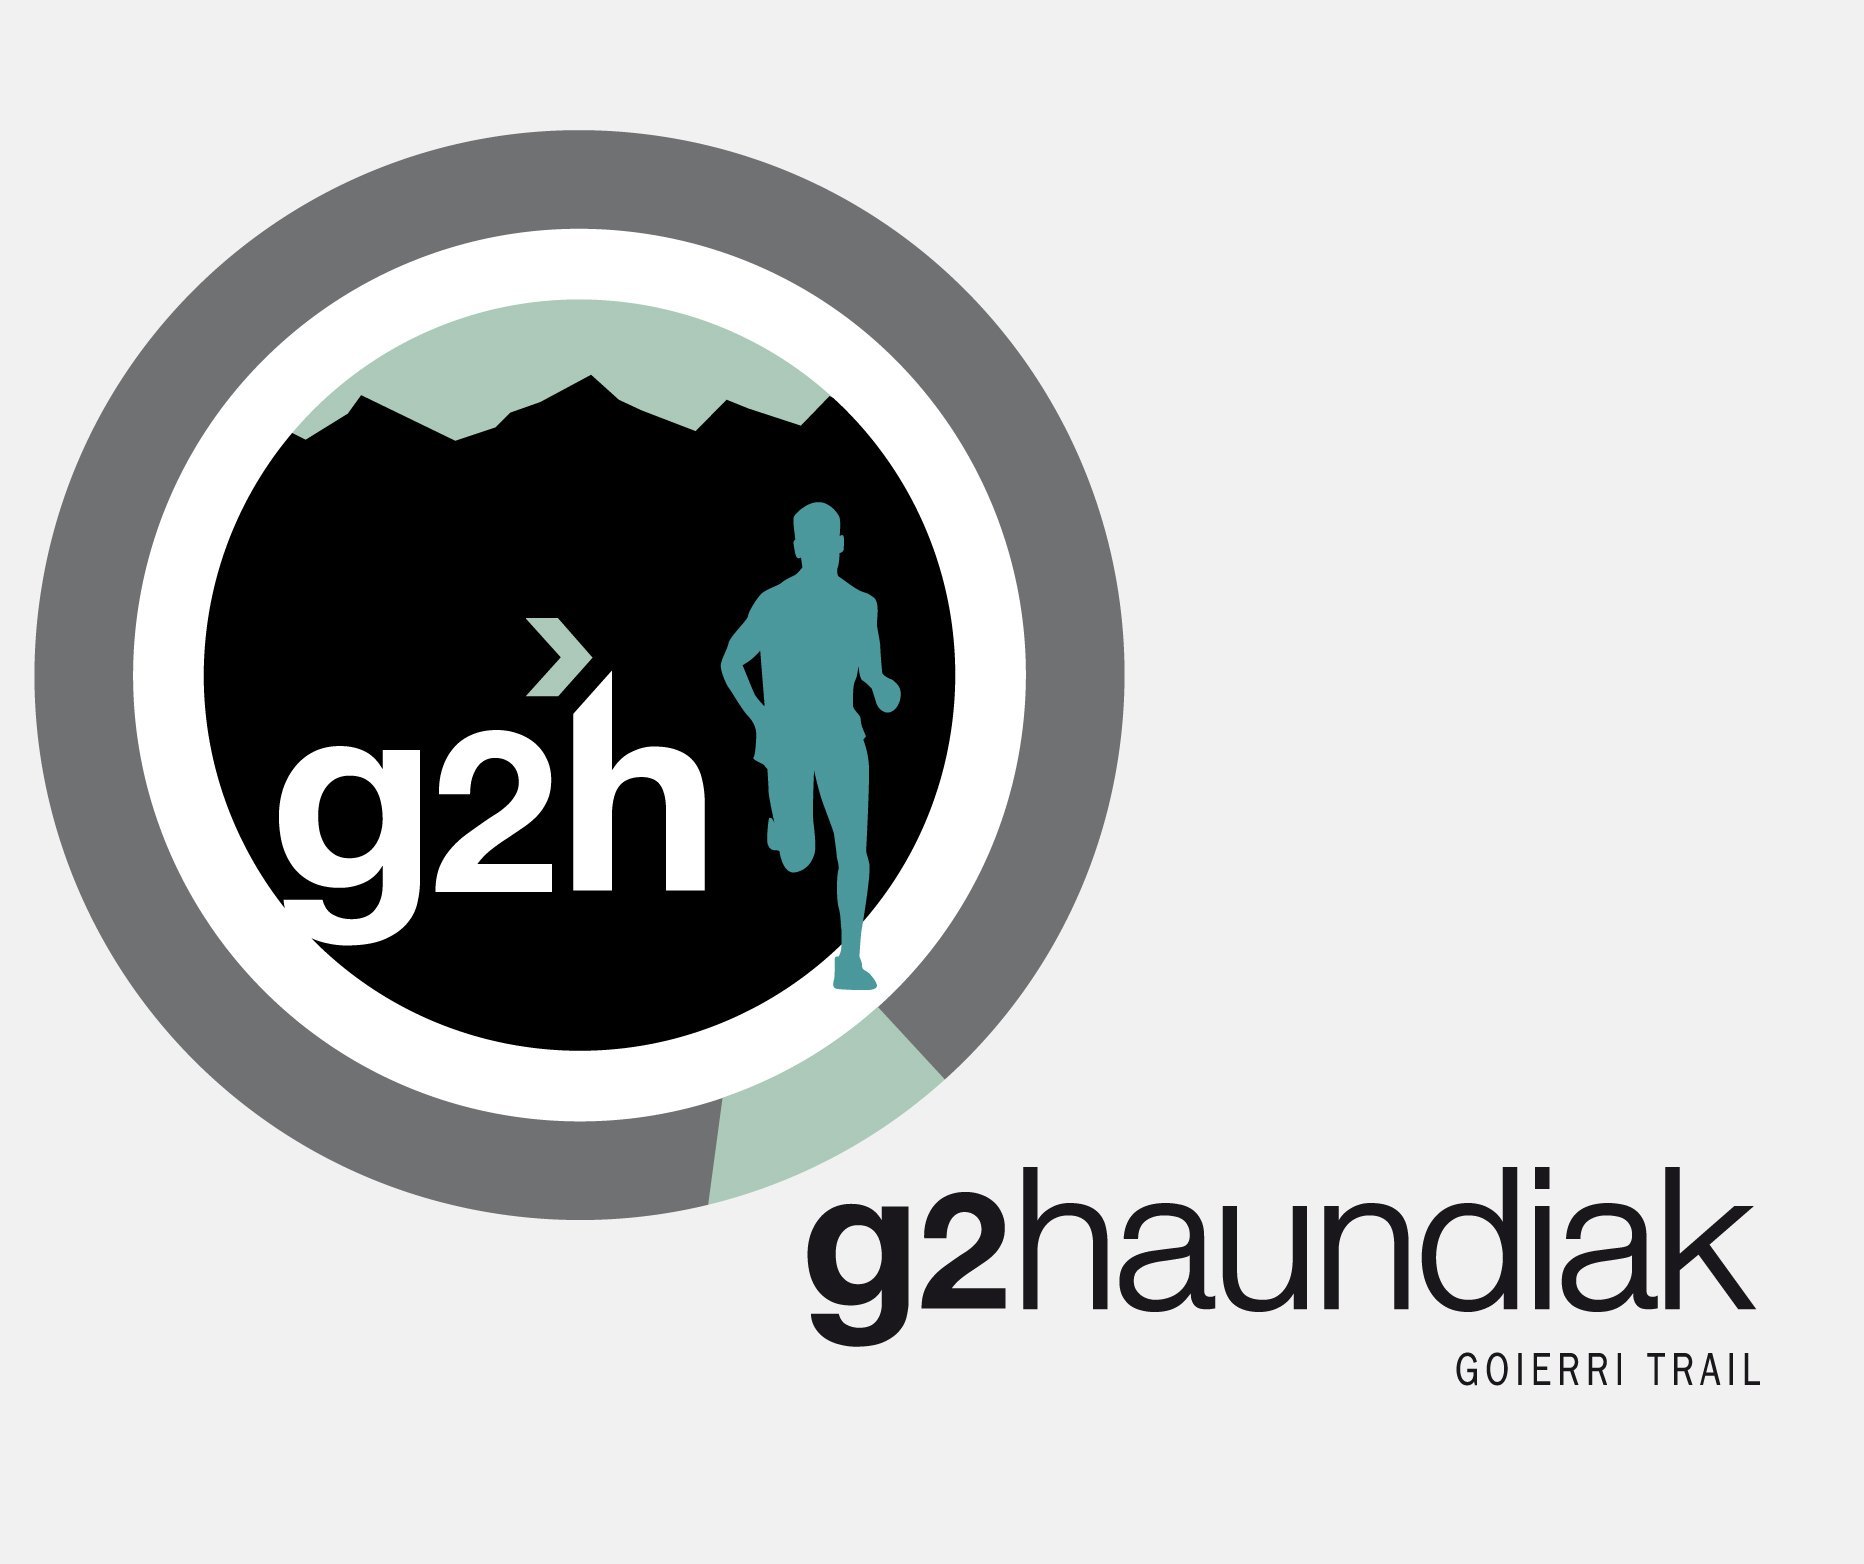 G2H - G2HAUNDIAK GOIERRI TRAIL